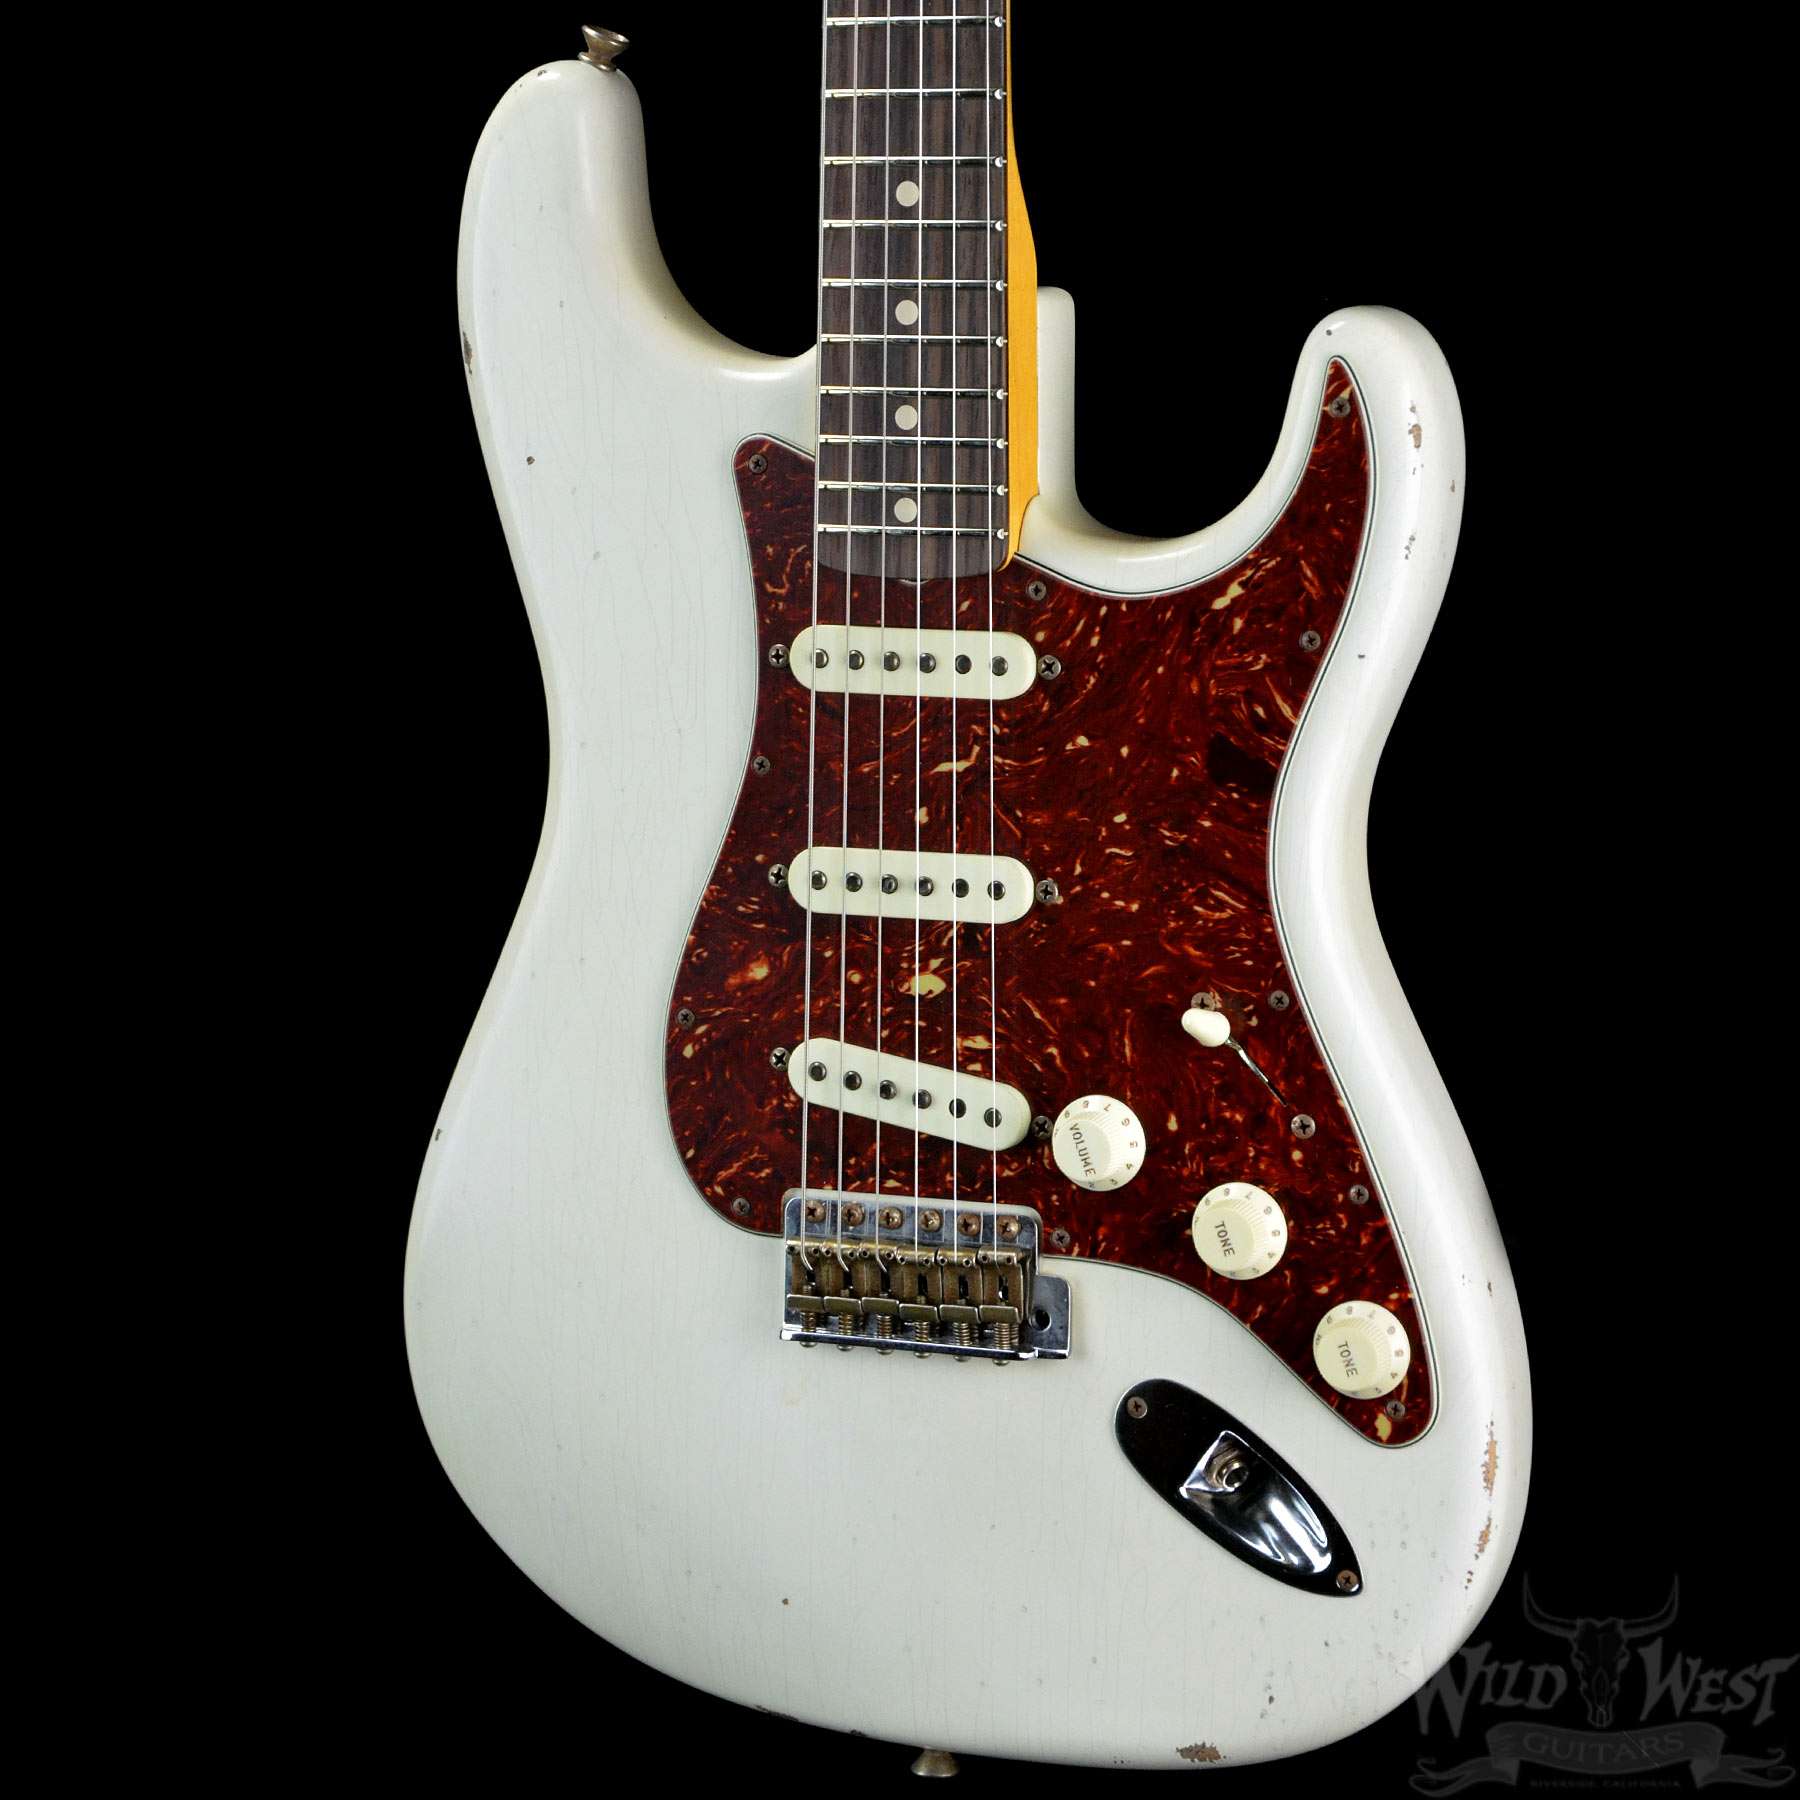 White stratocaster. Фендер стратокастер красный. Fender Stratocaster красная белая. Fender Stratocaster Black and White. Arctic White Stratocaster.